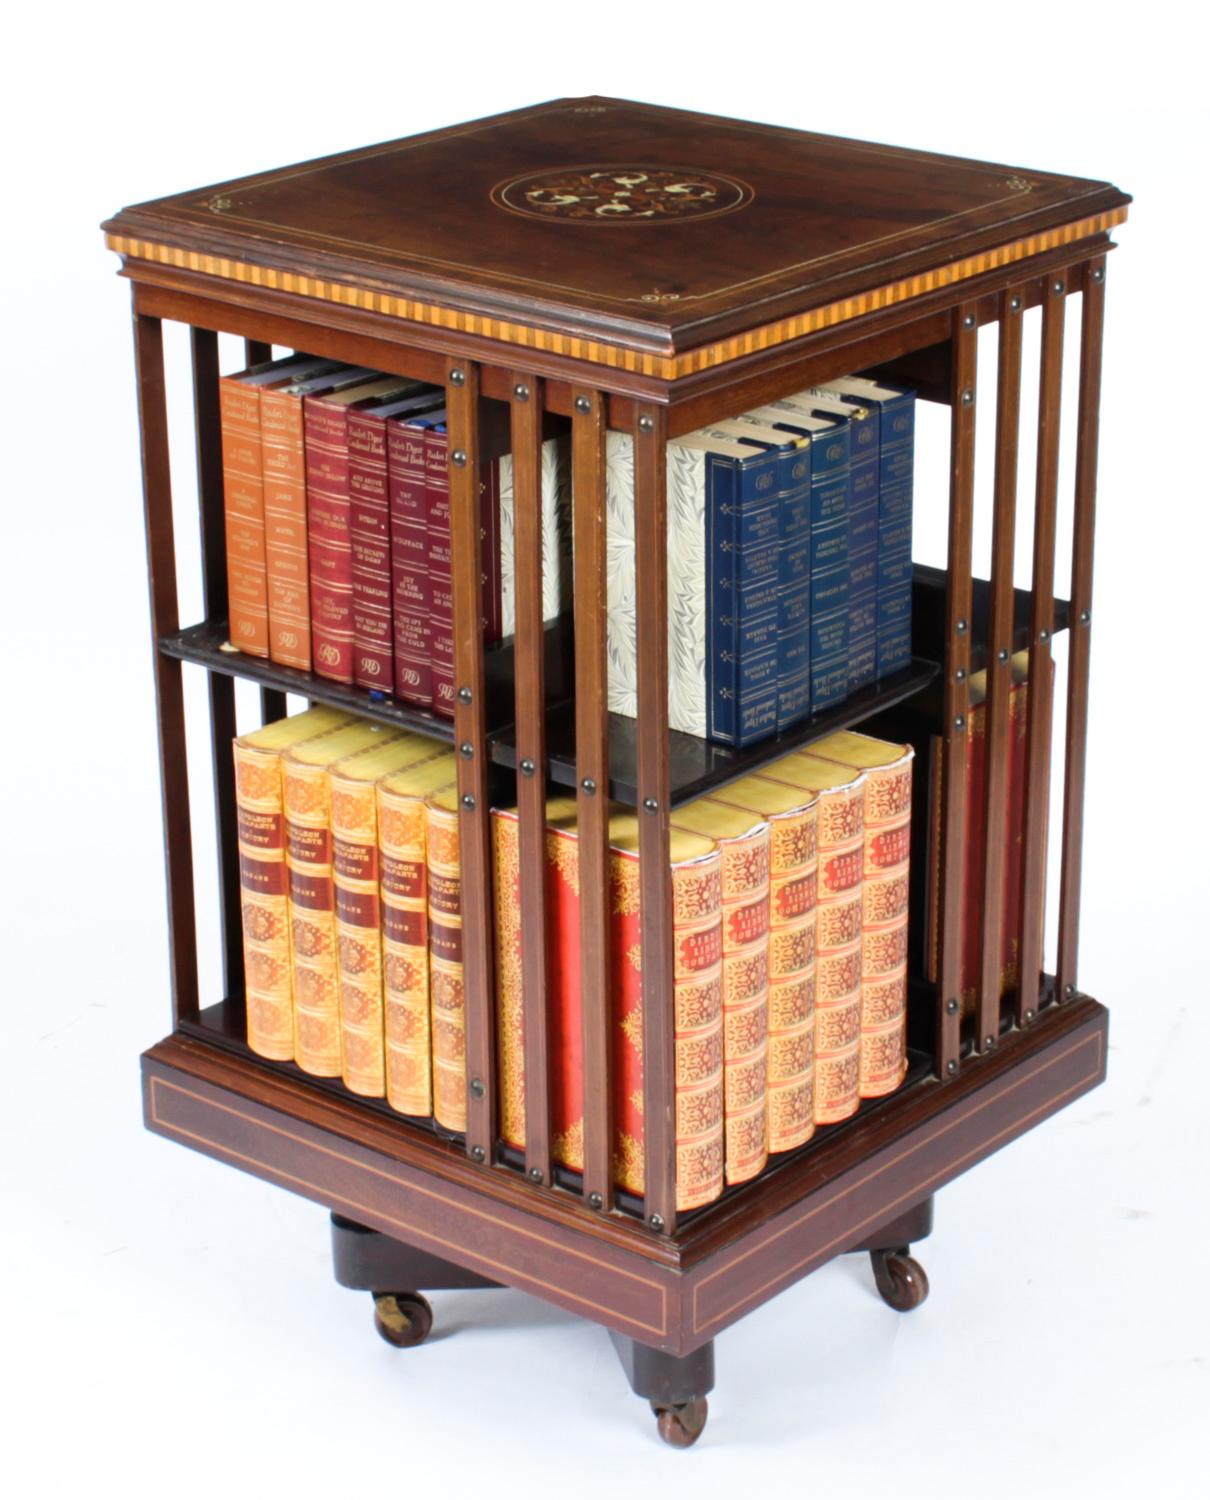 Dies ist eine exquisite antike viktorianische drehbare Bücherregal, ca. 1880 in Datum.

Er ist aus Mahagoni gefertigt, dreht sich auf einem massiven gusseisernen Sockel, hat oben und unten Buchsbaumeinlagen, oben in der Mitte eine aufwändige